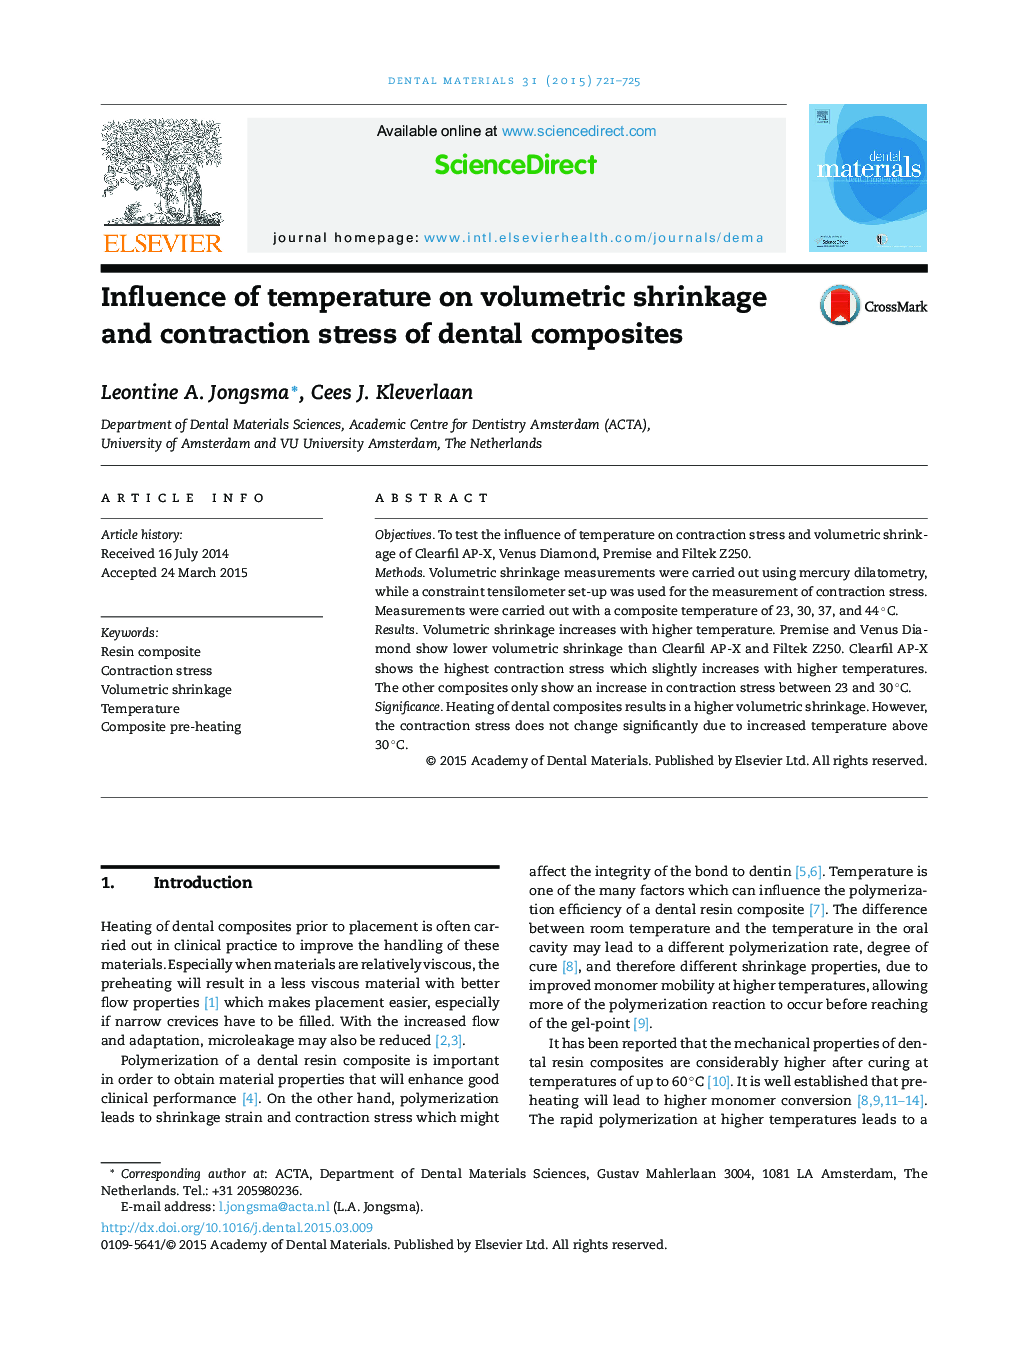 تأثیر دما بر انقباض حجمی و تنش انقباضی کامپوزیتهای دندانی 